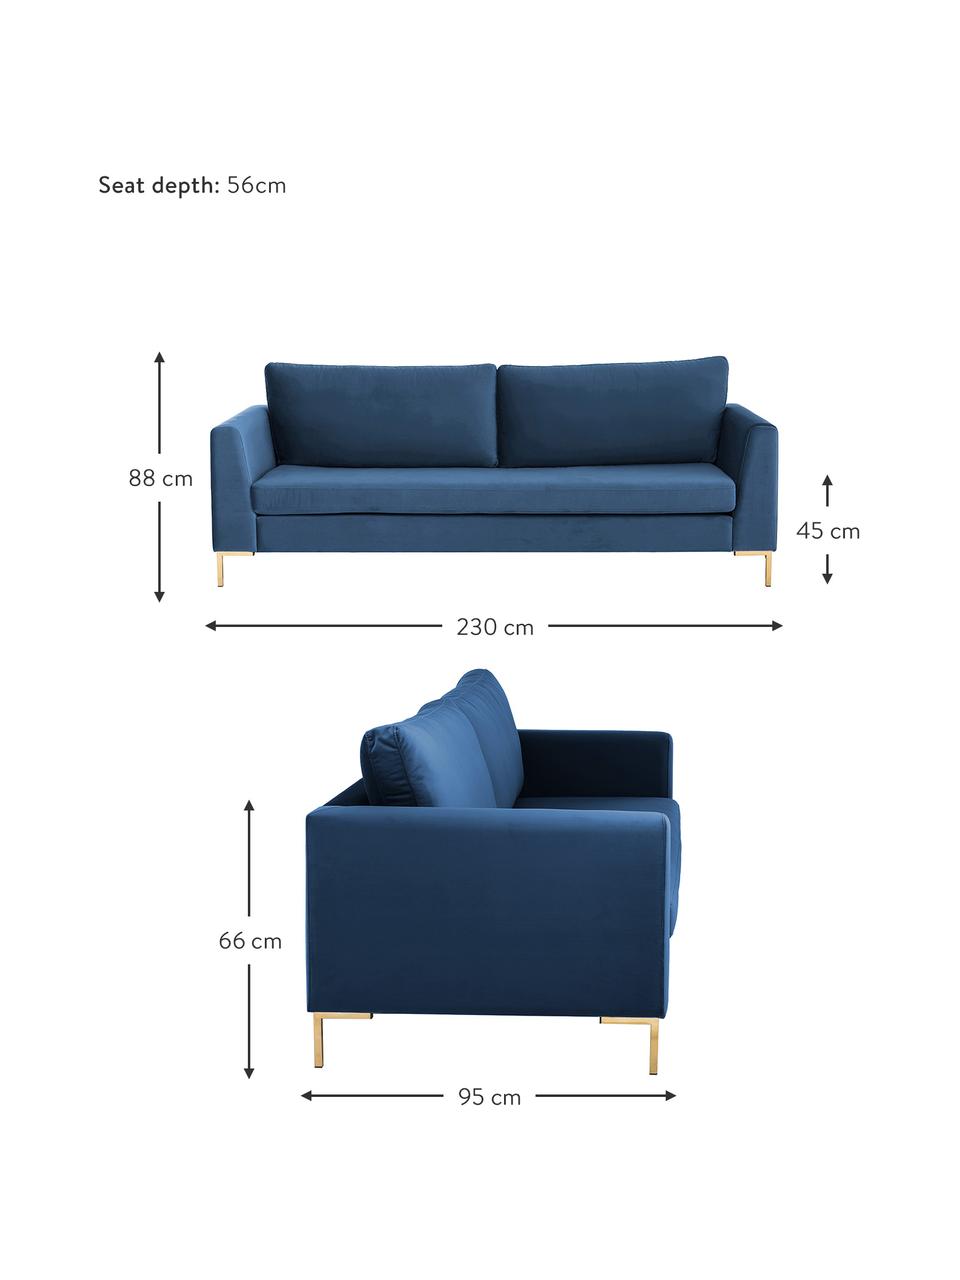 Samt-Sofa Luna (3-Sitzer) in Blau mit Metall-Füßen, Bezug: Samt (Polyester) Der hoch, Gestell: Massives Buchenholz, Füße: Metall, galvanisiert, Samt Blau, Gold, B 230 x T 95 cm